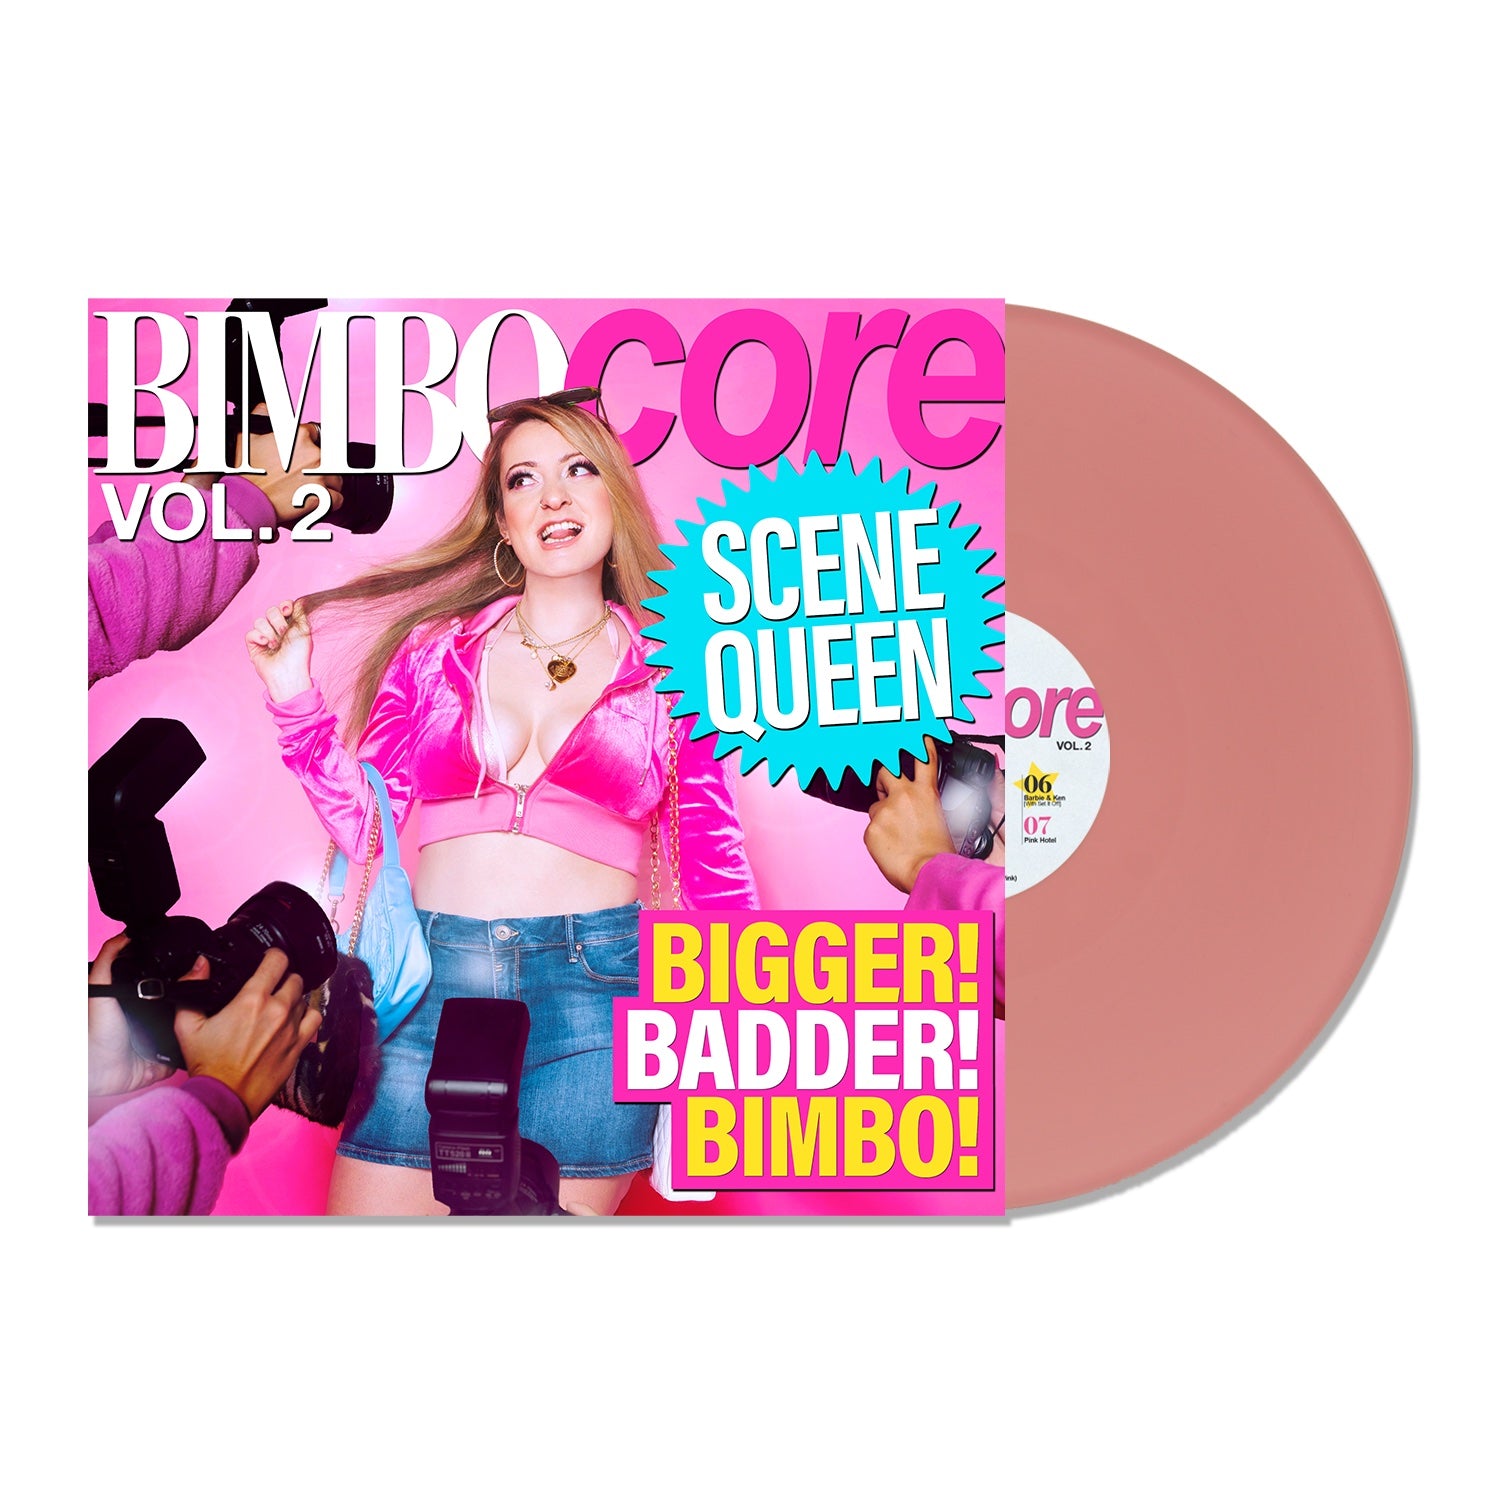 Scene Queen - Bimbocore Vol. 2: Limited Edition Pink Vinyl LP 